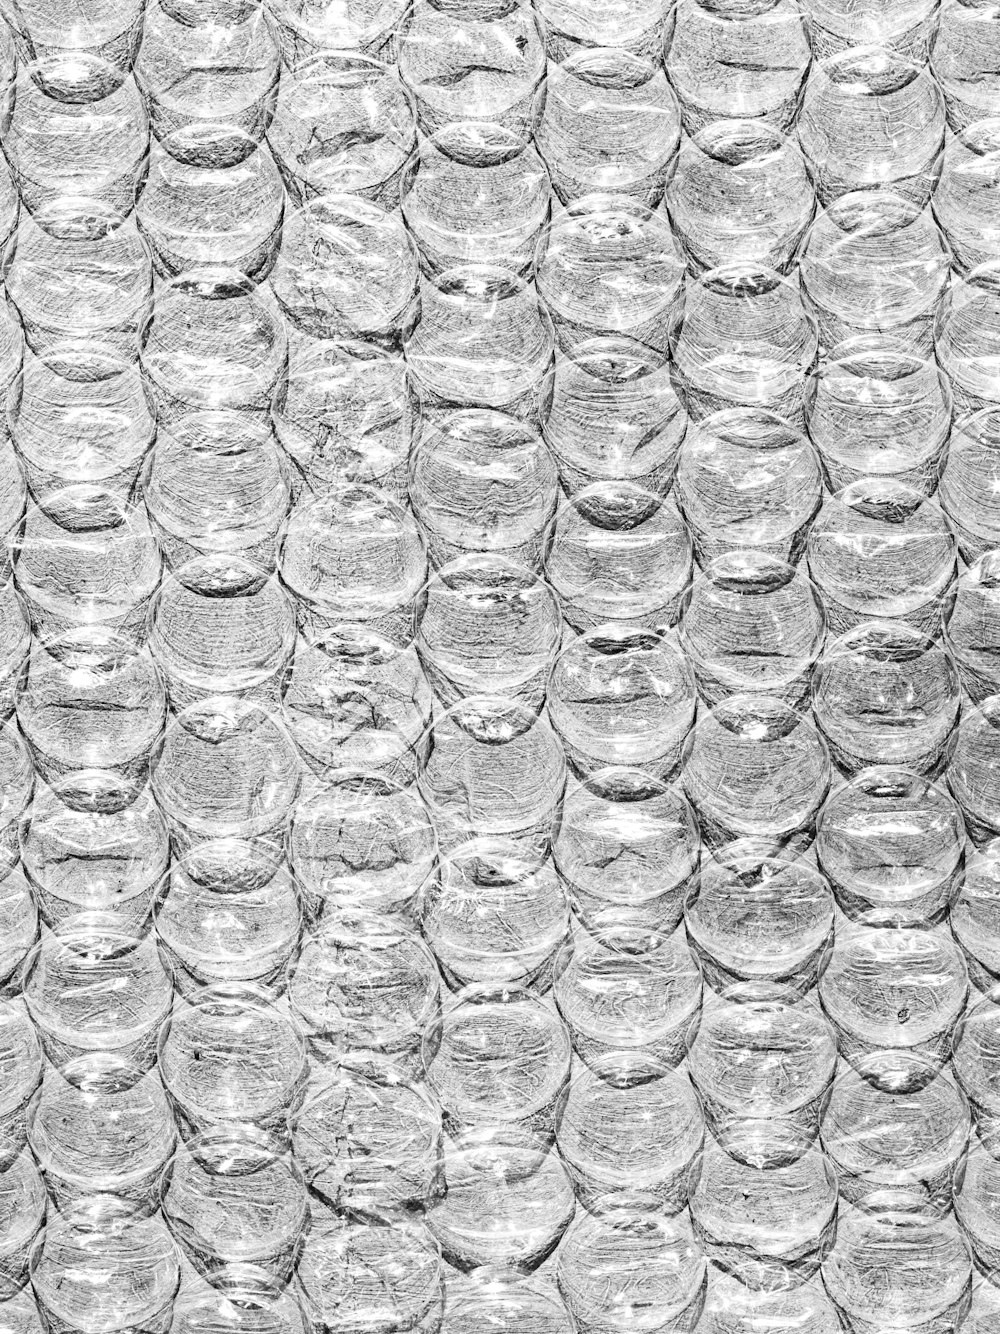 foto en escala de grises de gotas de agua sobre vidrio